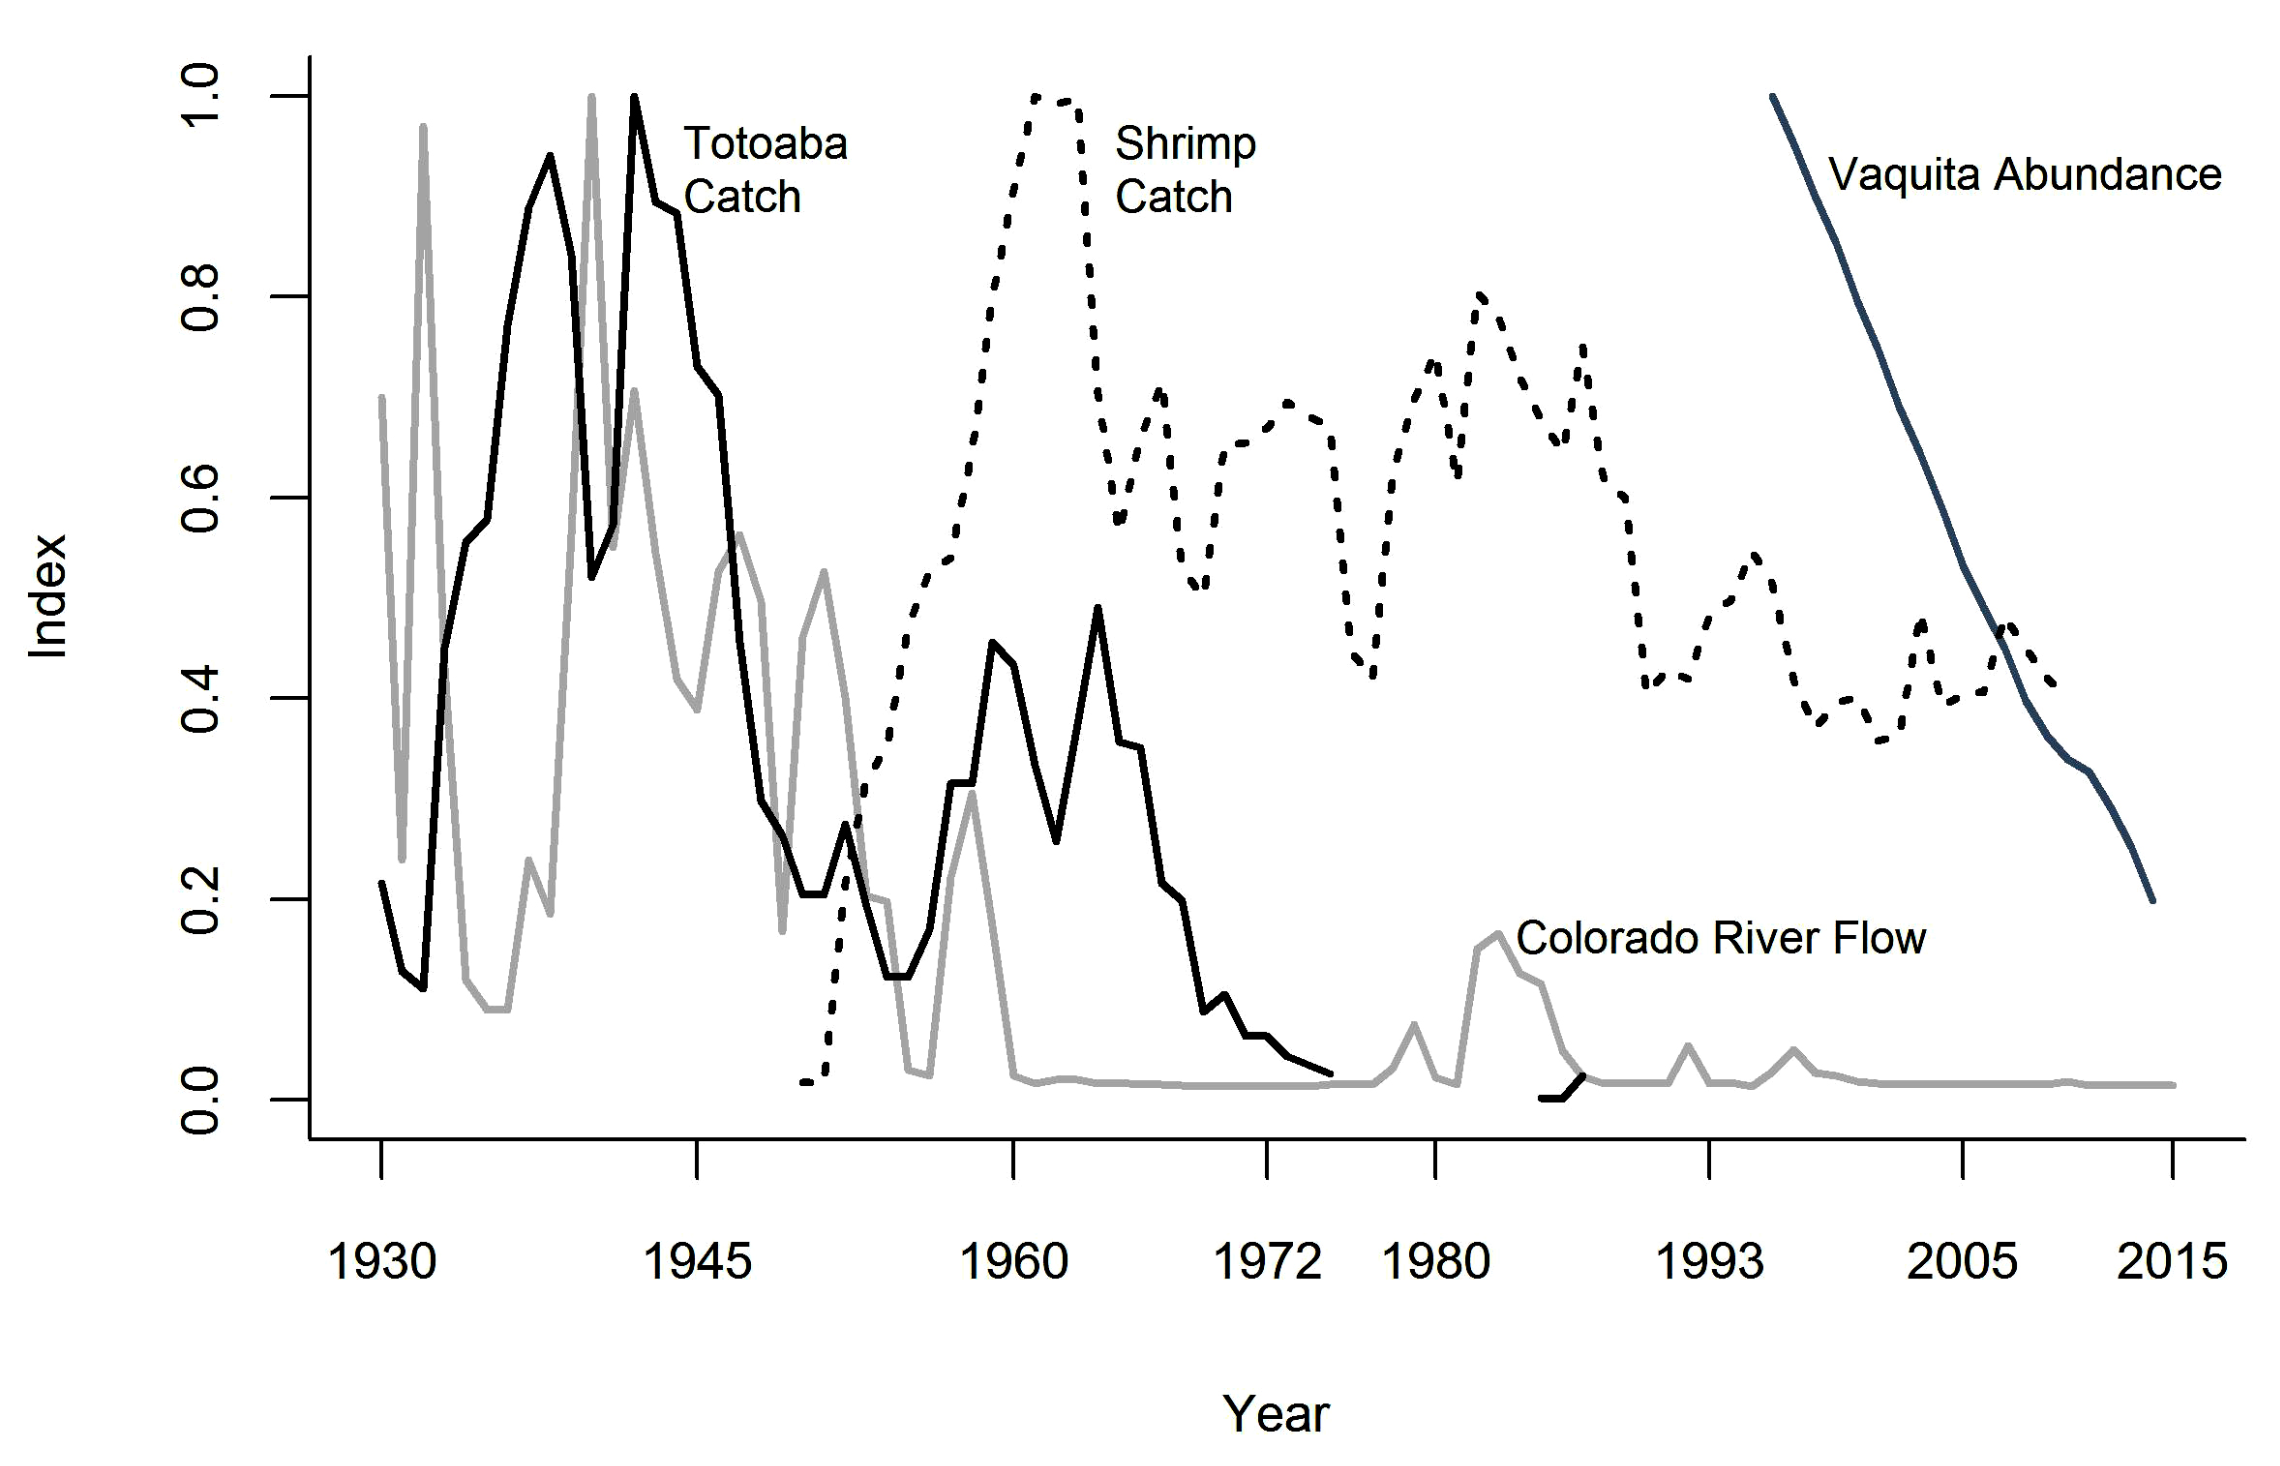 科罗拉多河至墨西哥流域（每立方米），石首鱼和虾类（公吨）的历史指数，以及鼠海豚的数量（个体数）。